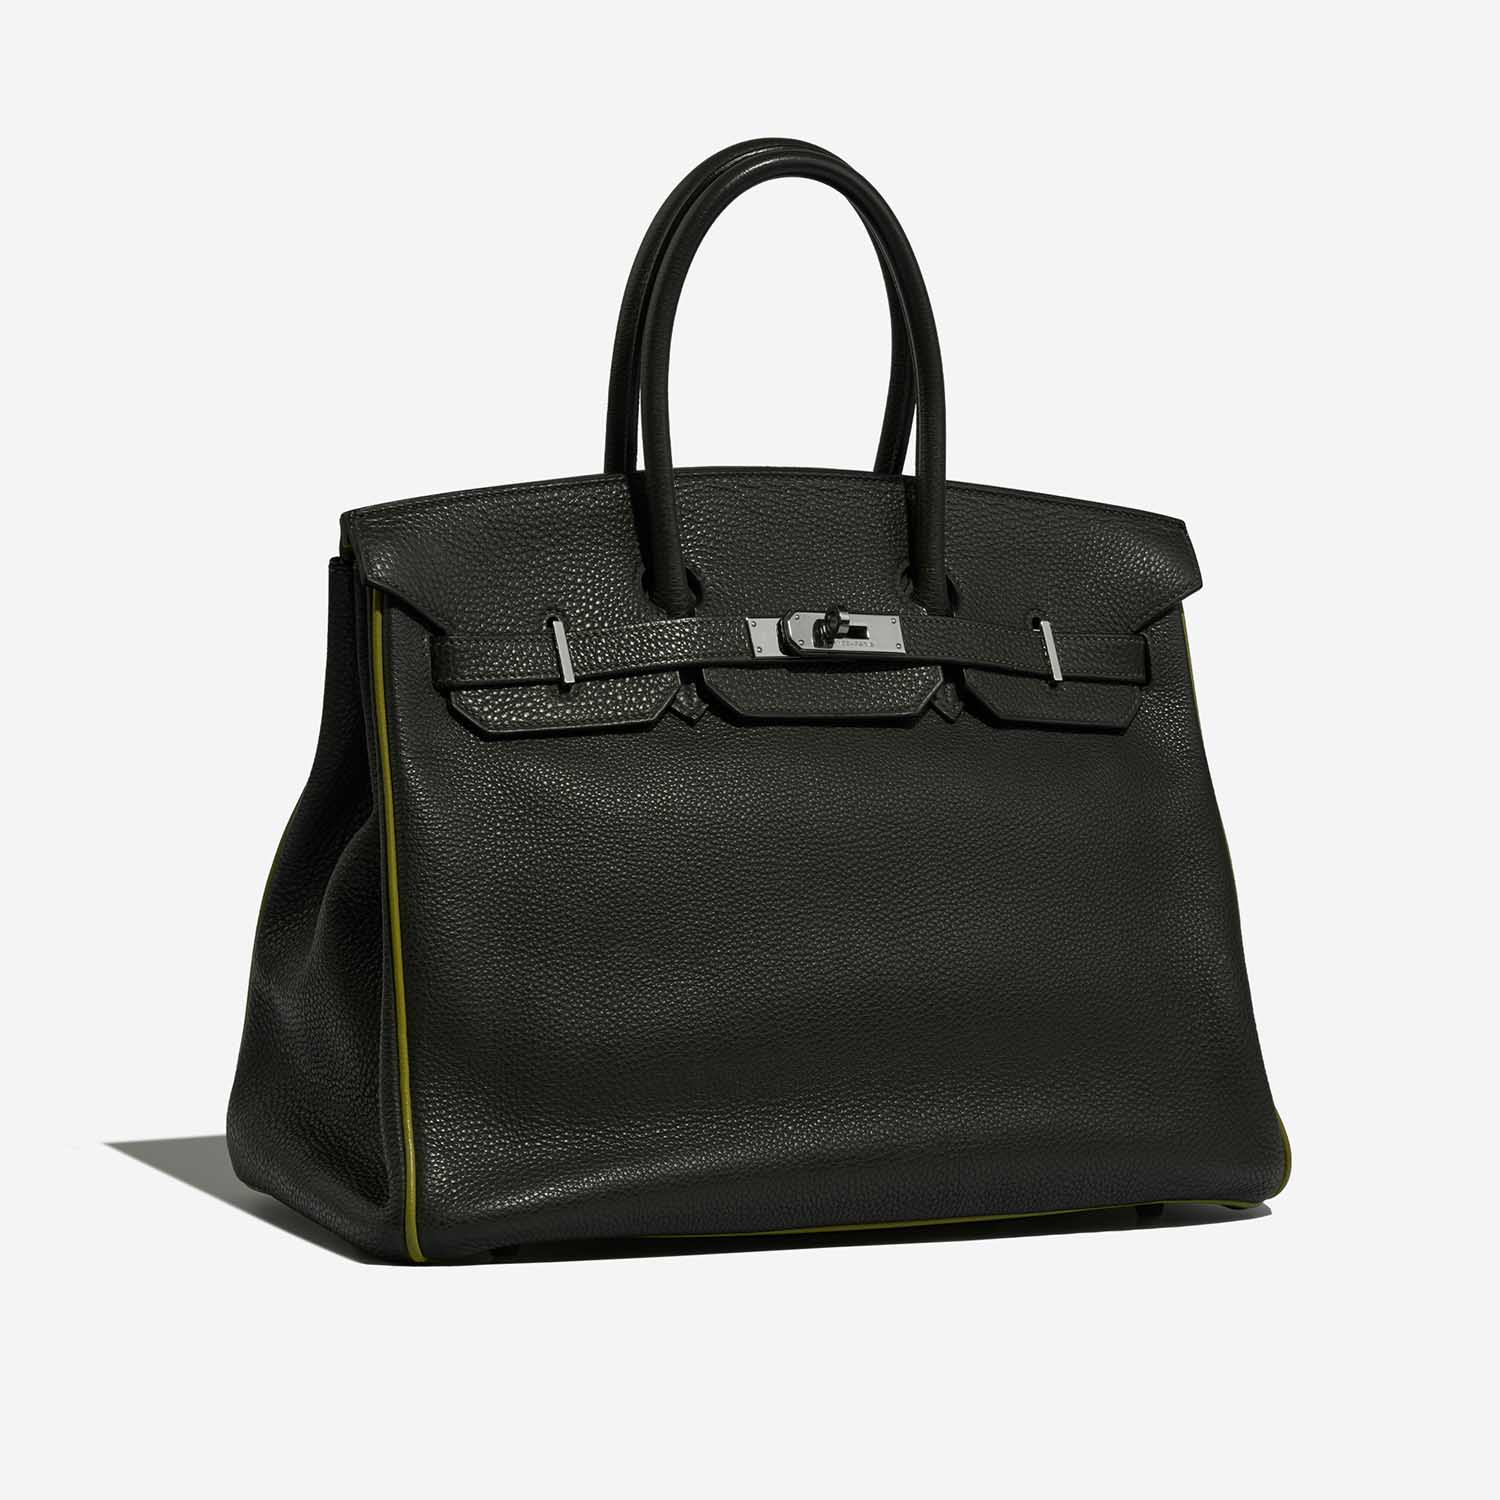 Hermès Birkin 35 VertFonce-VertChartreuse-VertAnis Side Front | Verkaufen Sie Ihre Designer-Tasche auf Saclab.com